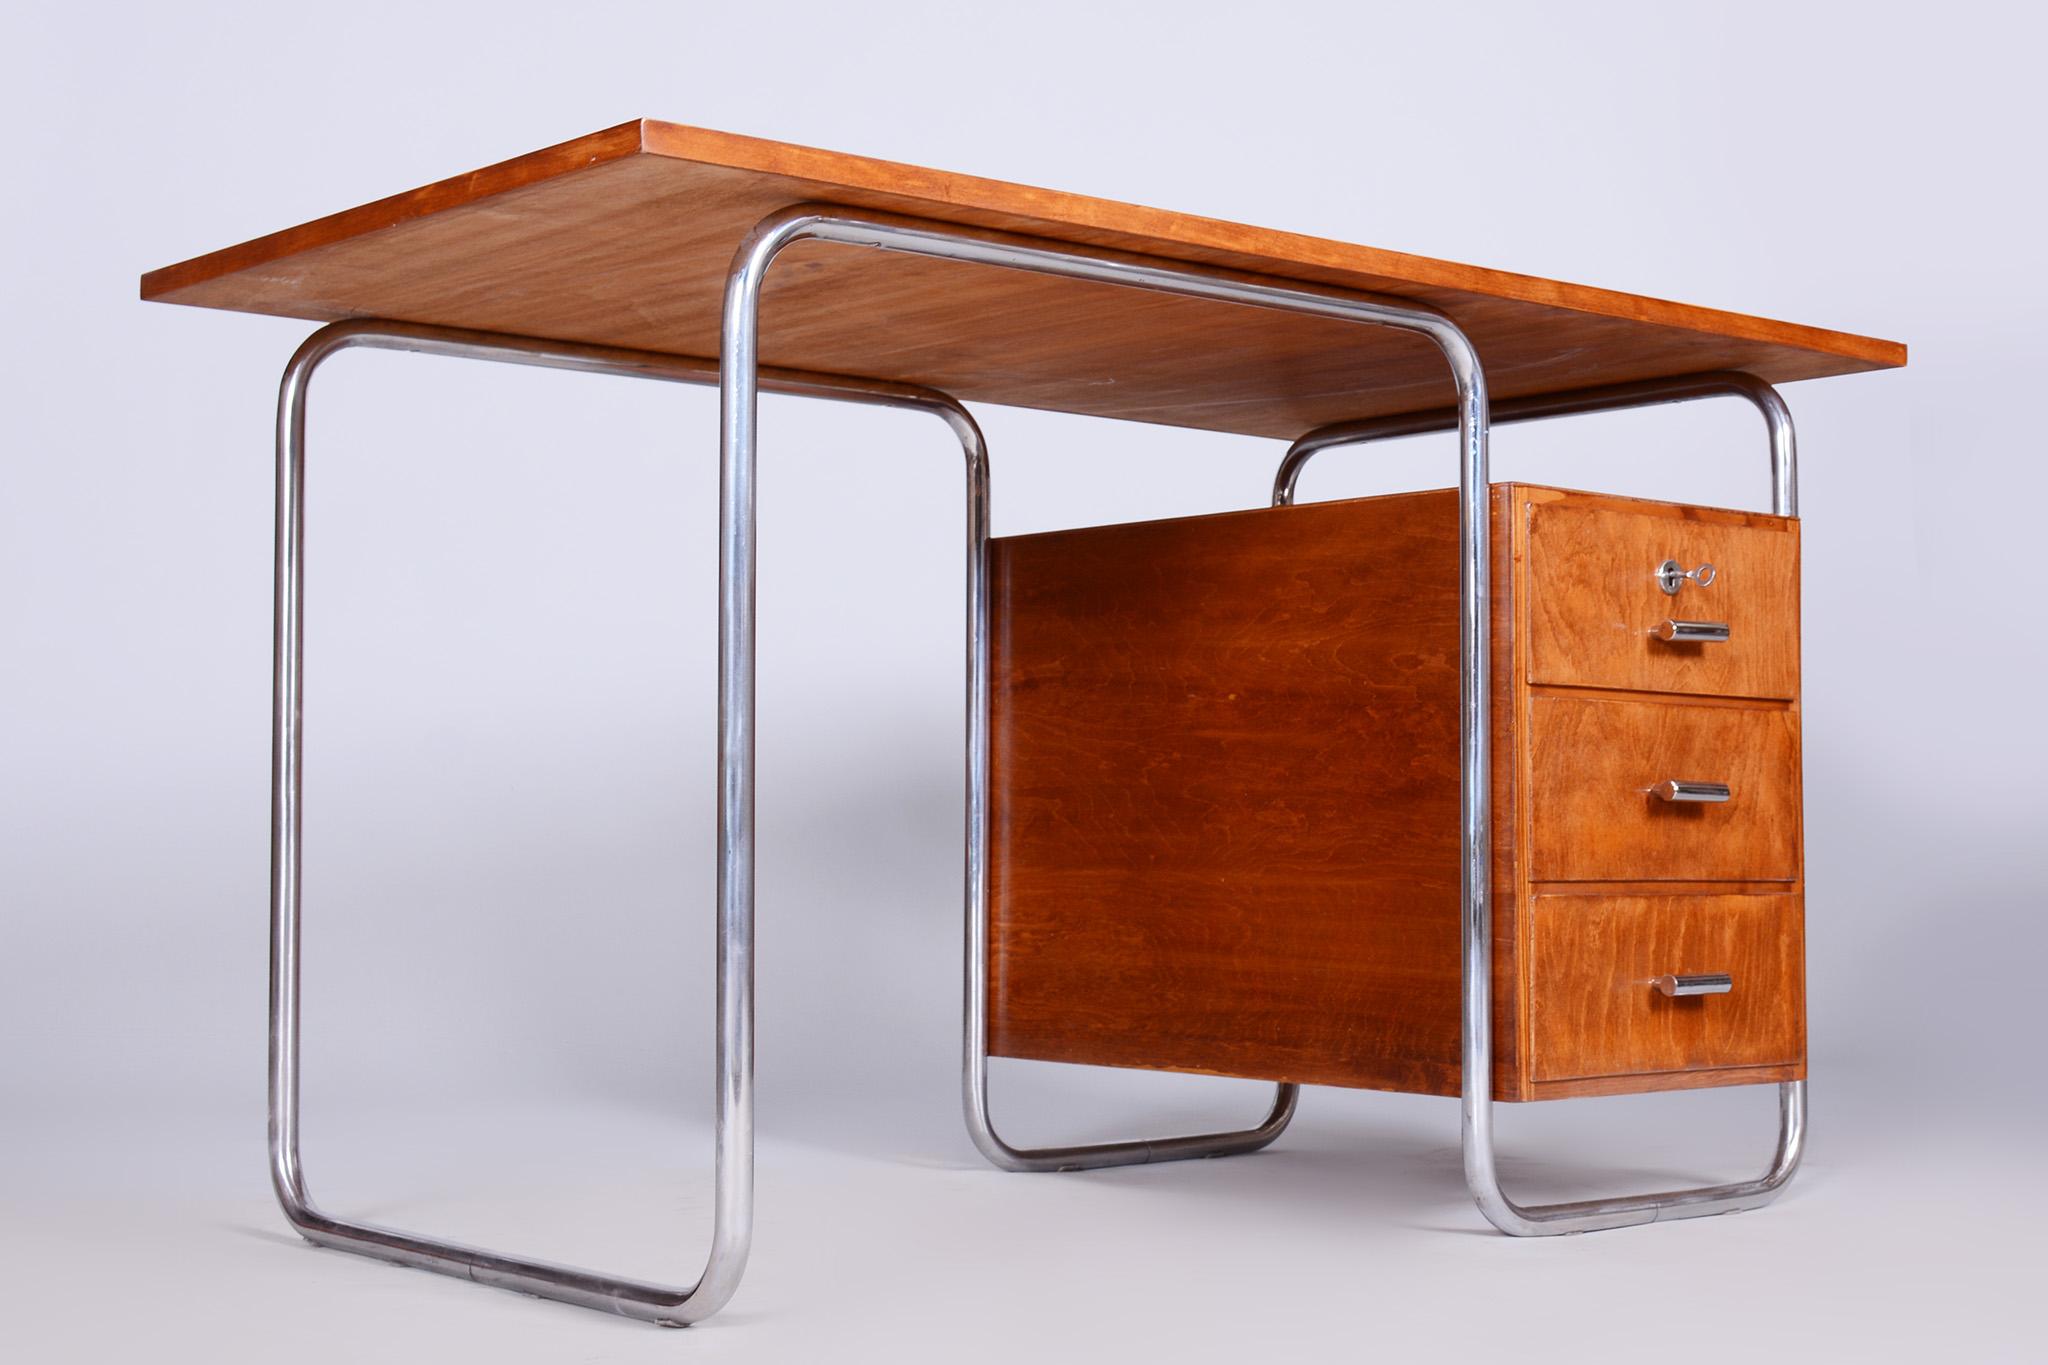 Bauhaus-Schreibtisch aus Buche, 1930er Jahre, von Robert Slezak, Tschechische Republik, restauriert 1